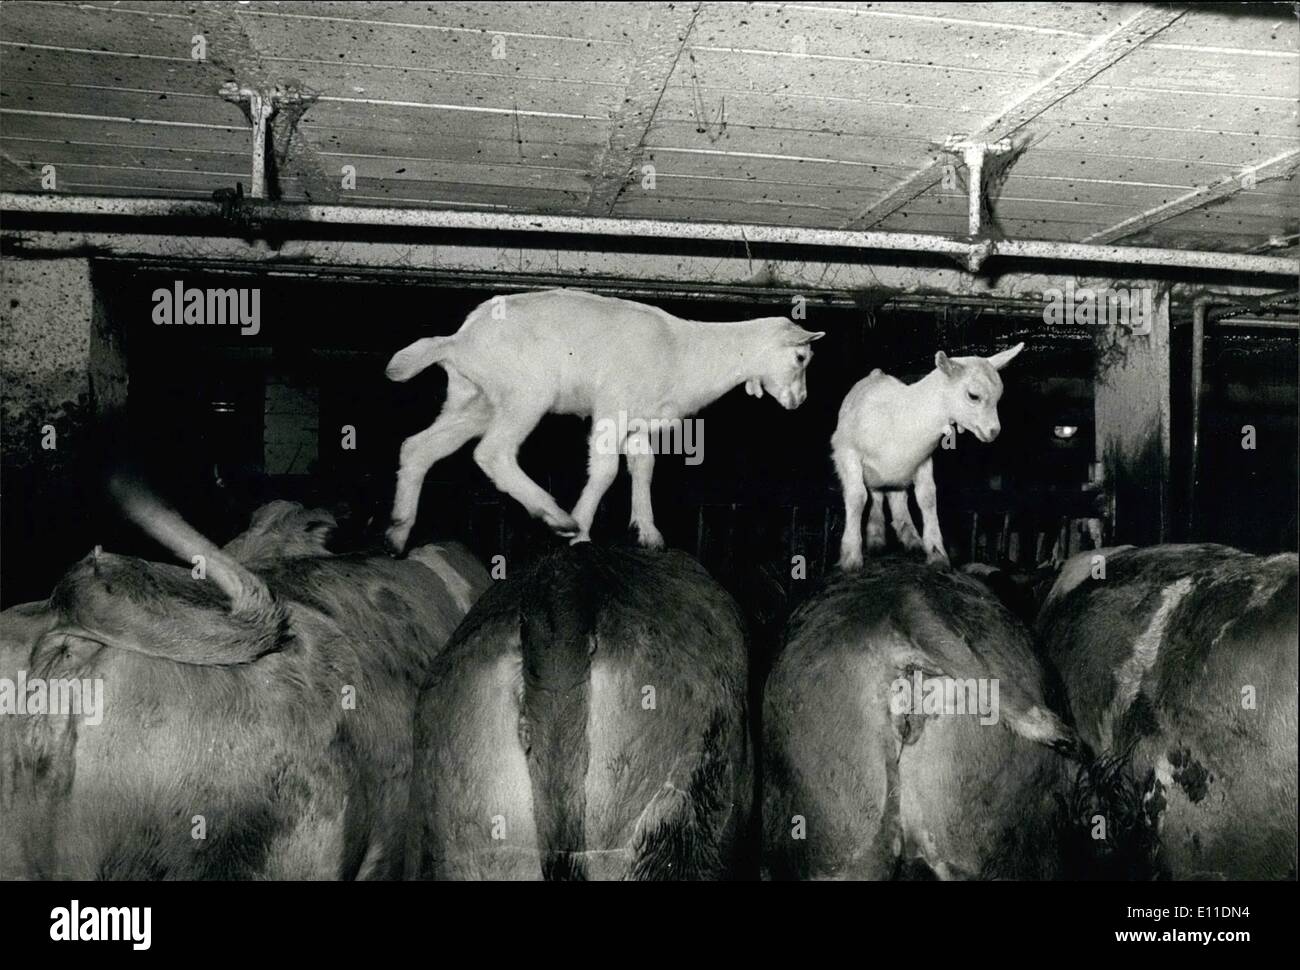 Mai 05, 1977 - Les chèvres sont saute au-dessus de vaches : Chaque matin, ces deux chèvres sautent sur les vaches de M. Wenger, un paysan suisse dans le village de Montmelon. Les chèvres ne sont pas formés du tout, le font seulement par plaisir. Photo montre stable avec les animaux. Banque D'Images